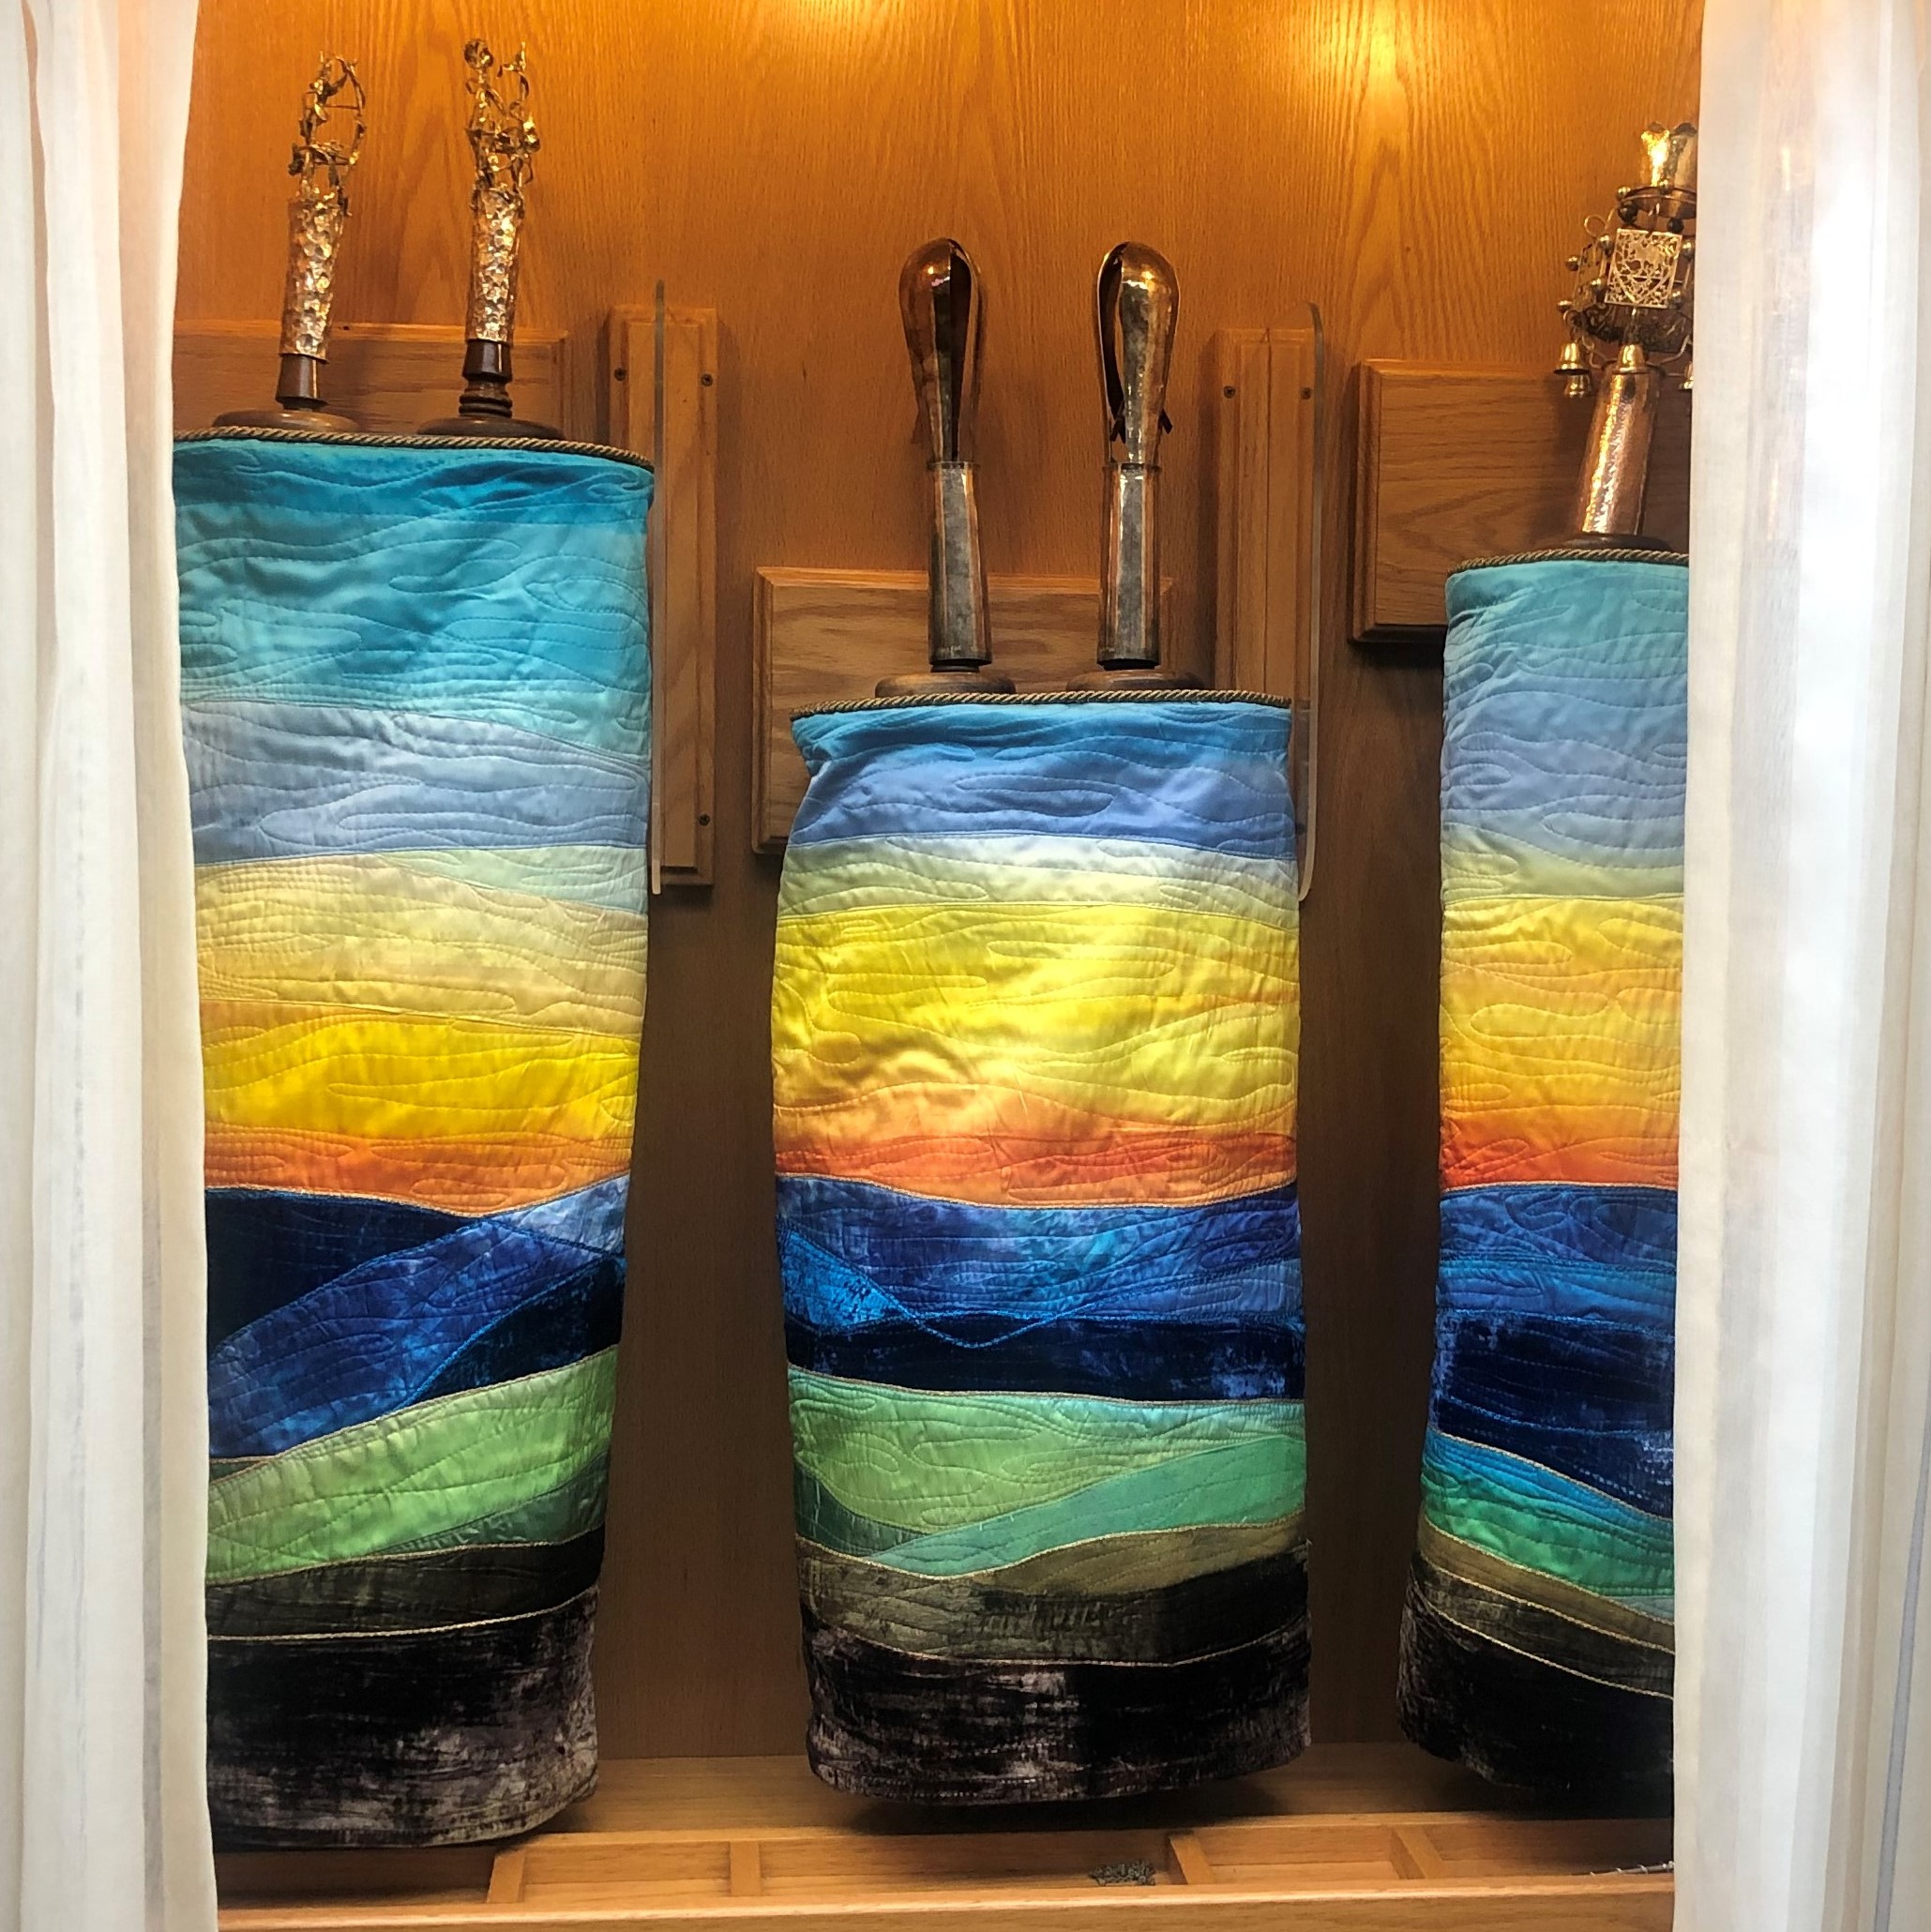 New Torah Mantles at Temple Emanuel!